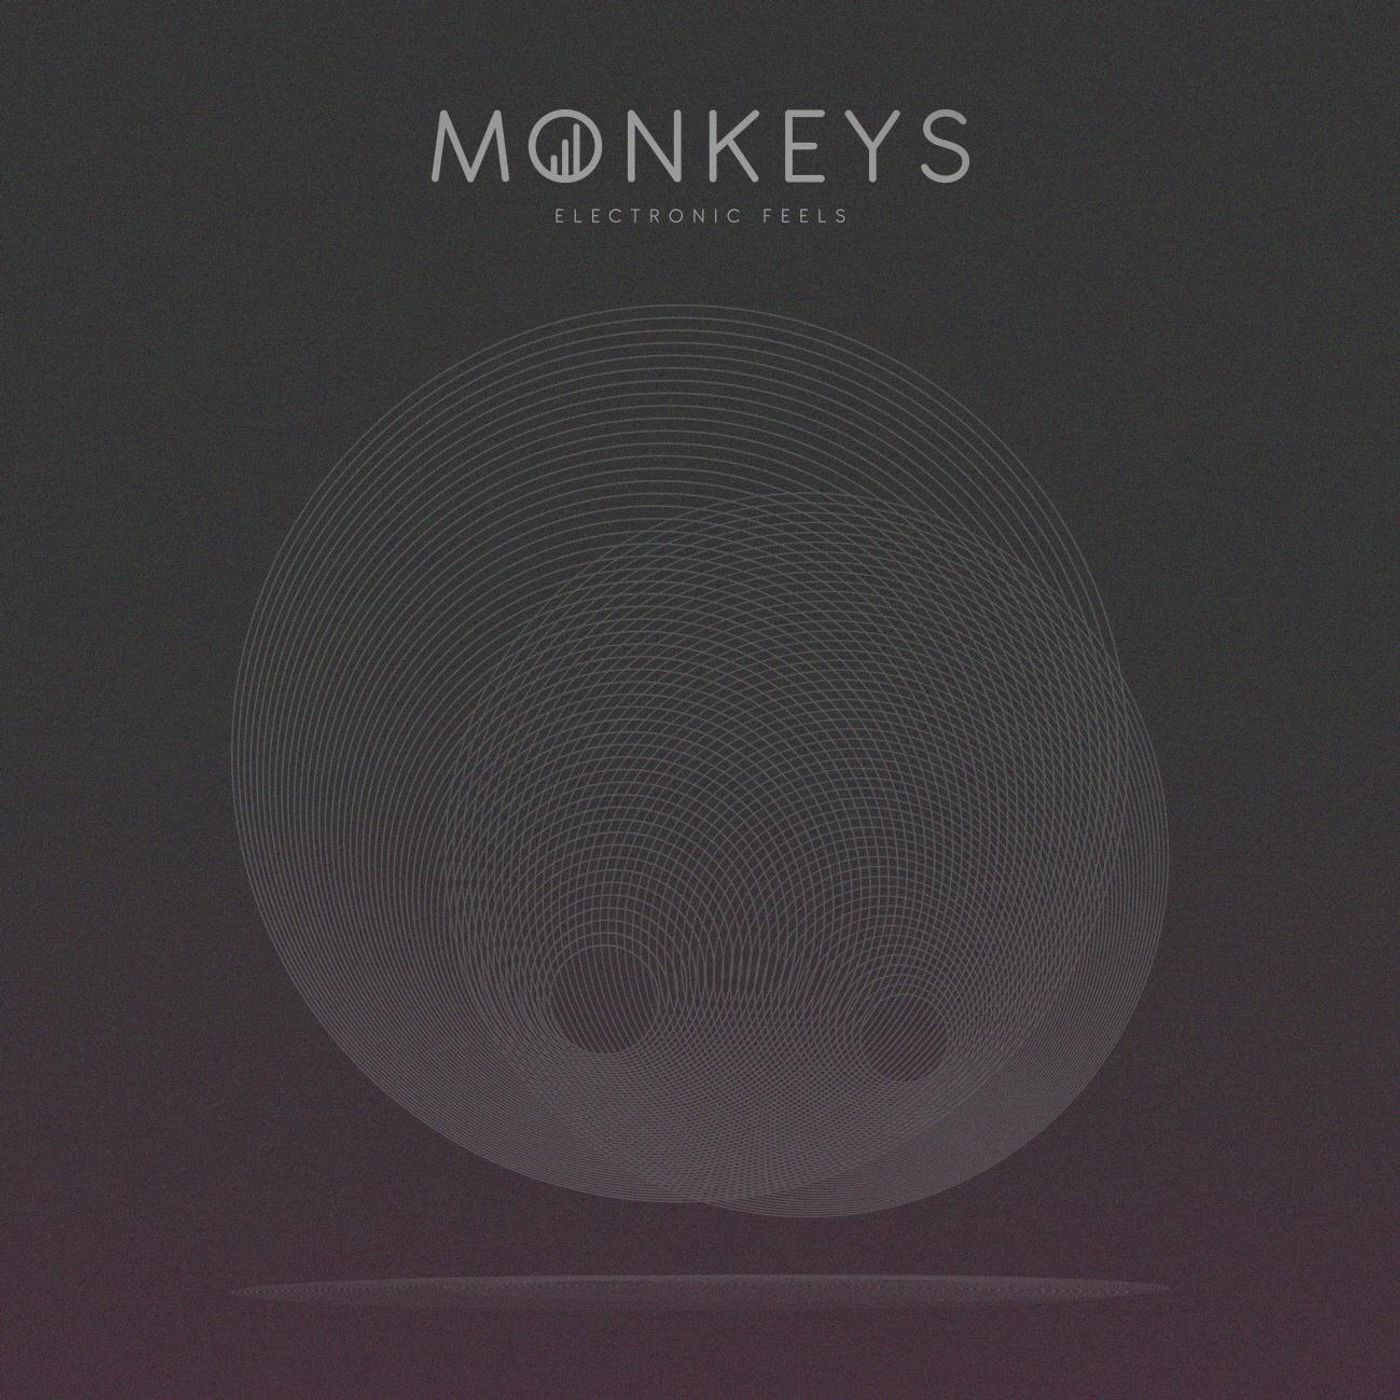 Monkeys Electronic Feels